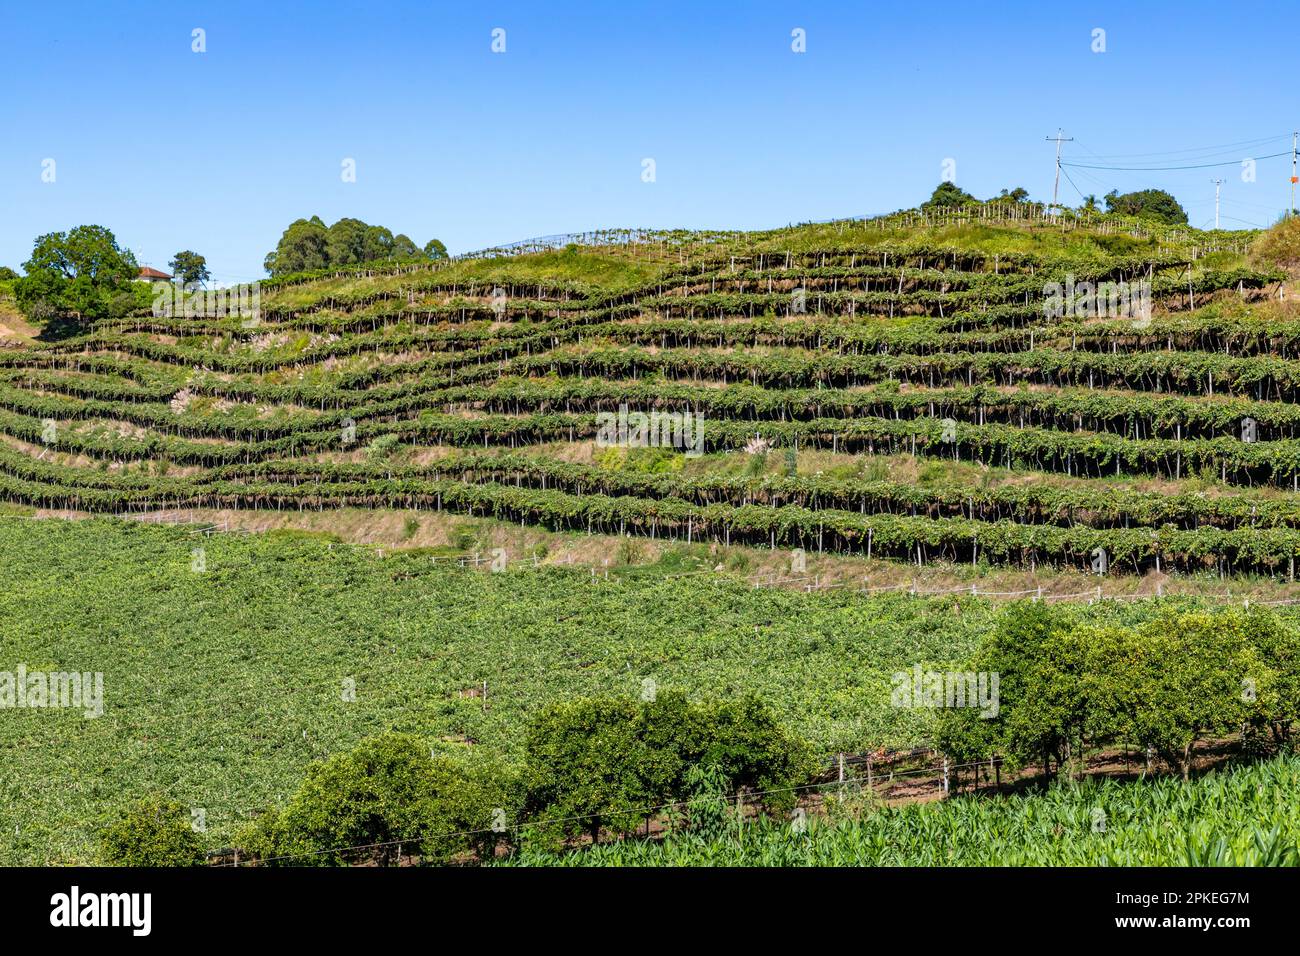 Vineyard in a farm with trees around, Otavio Rocha, Flores da Cunha, Rio Grande do Sul, Brazil Stock Photo